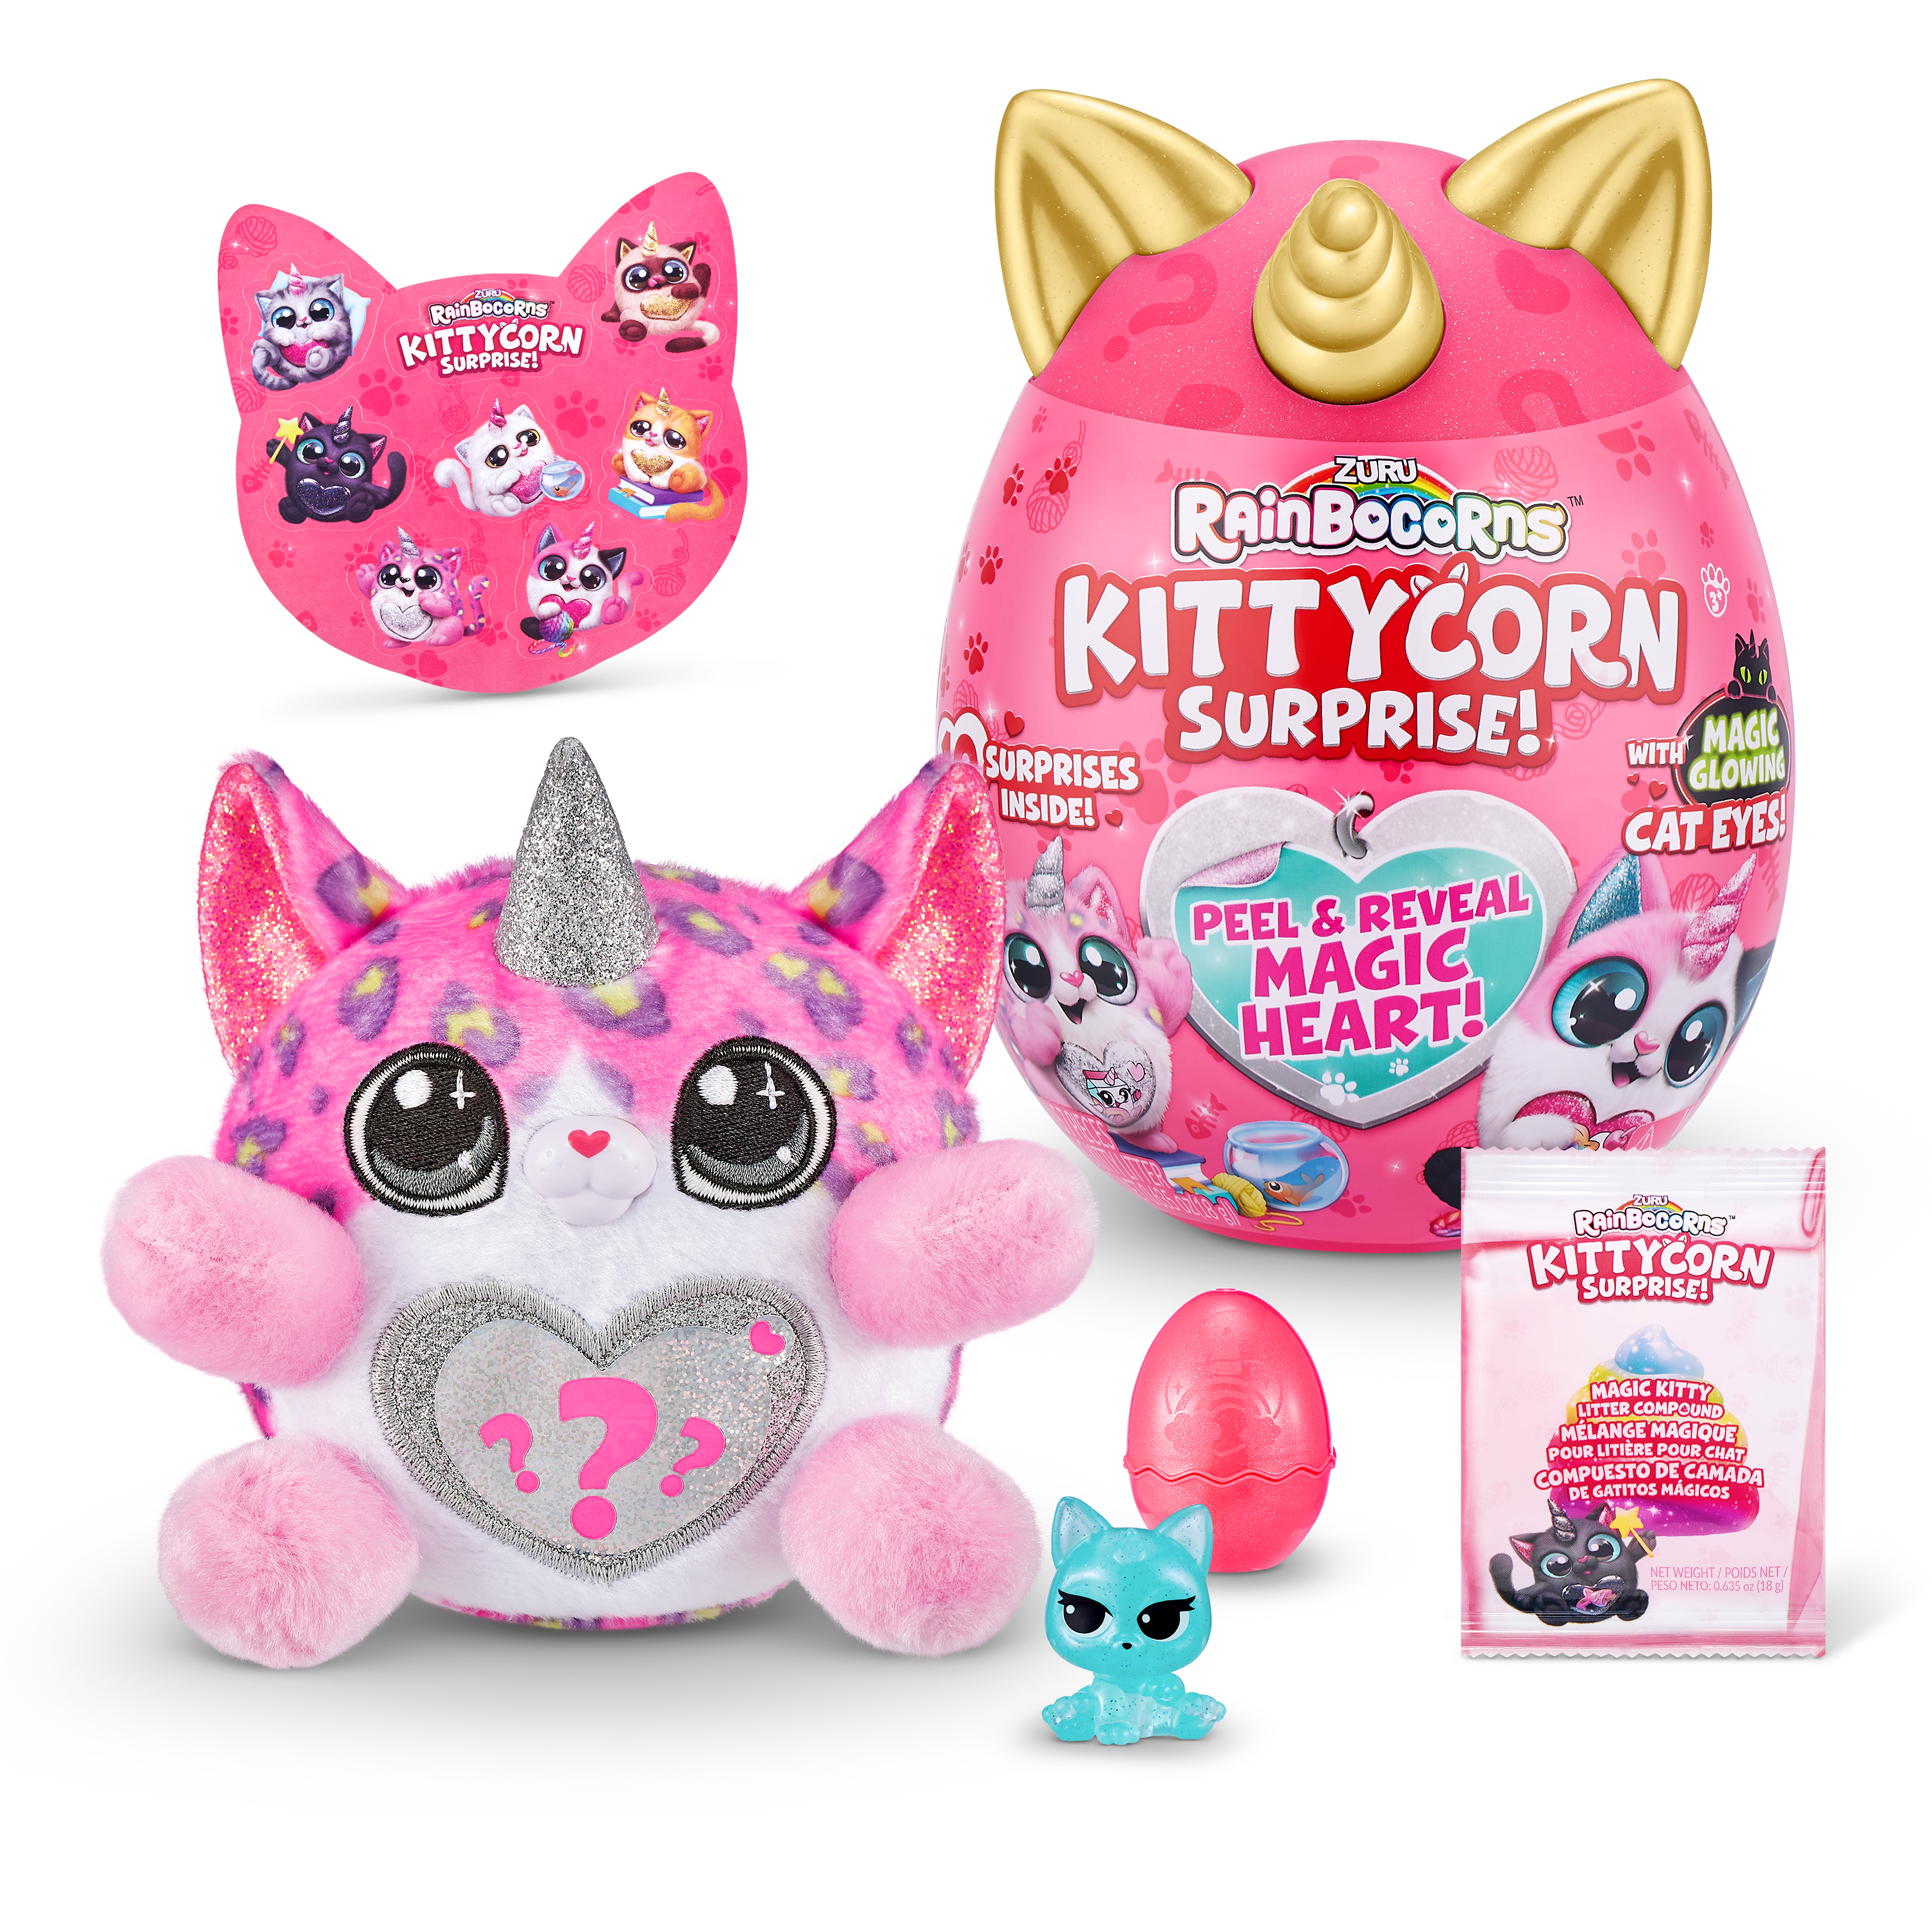 Игровой набор Rainbocorns сюрприз в яйце Kittycorn Surprise (плюшевый котенок, мини питомец в яйце, наклейки, слайм)  цвет розовый— магазин-салютов.рус